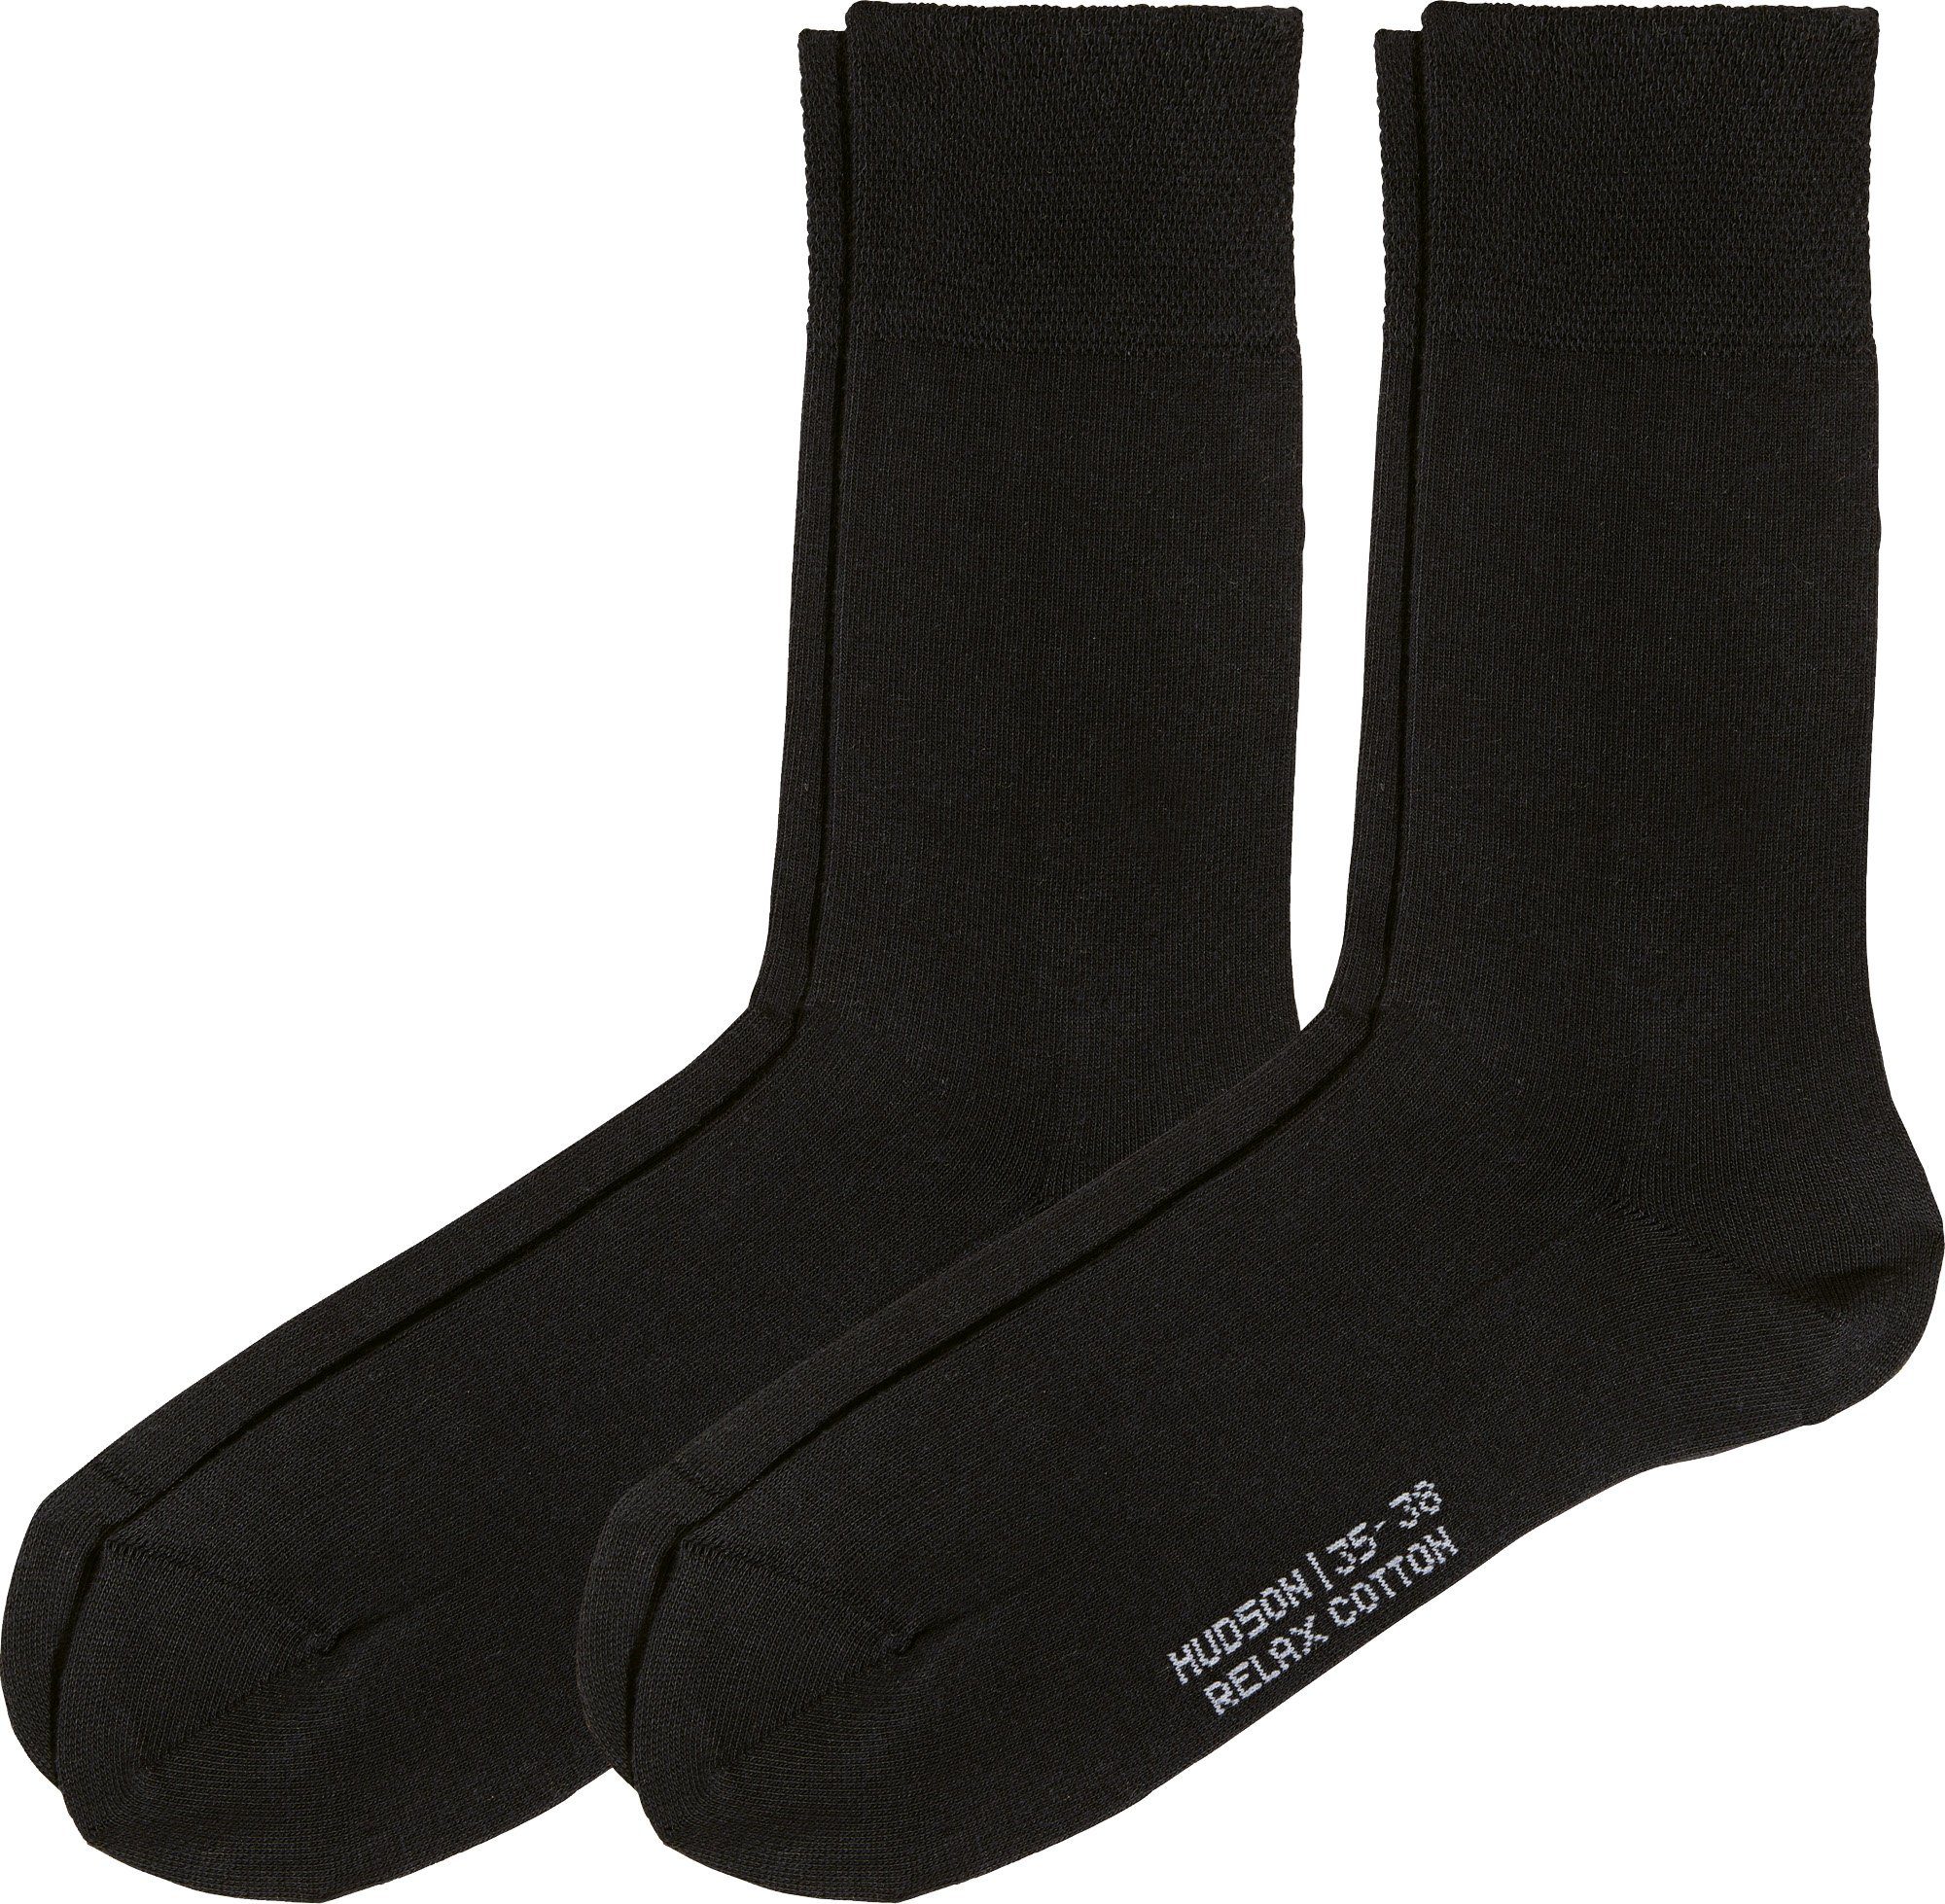 Uni Softbund Paar Socken schwarz Damen-Socken Hudson mit 2